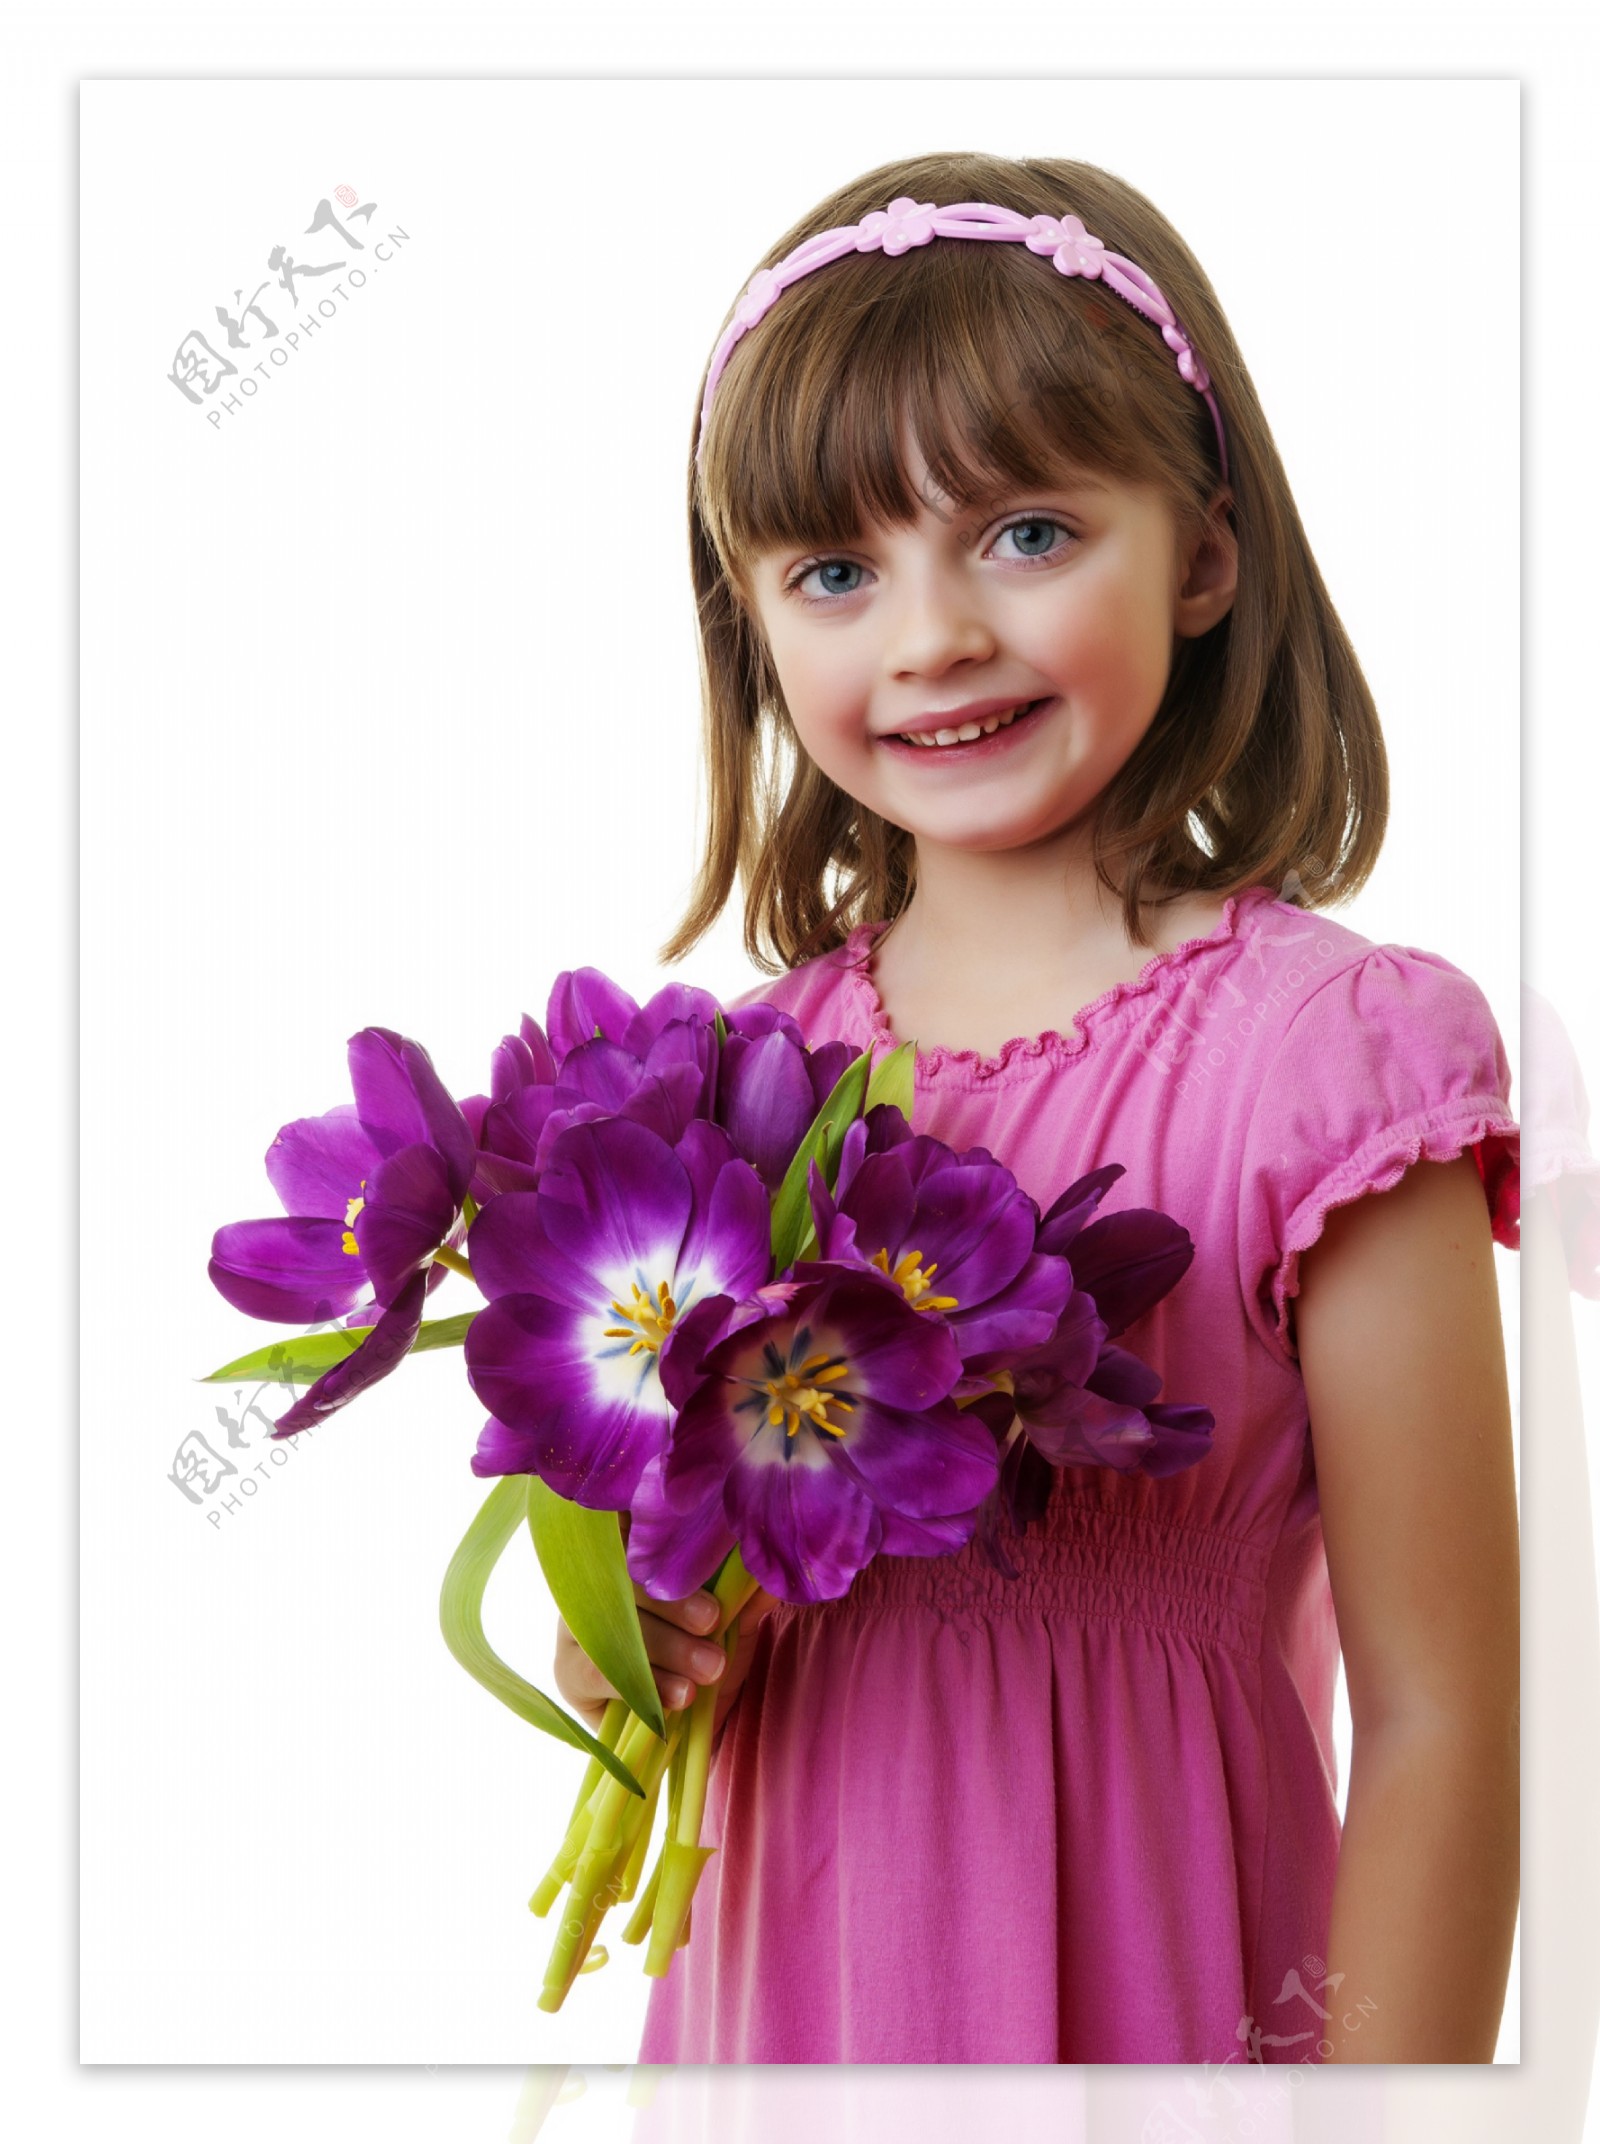 捧着鲜花的可爱女孩图片